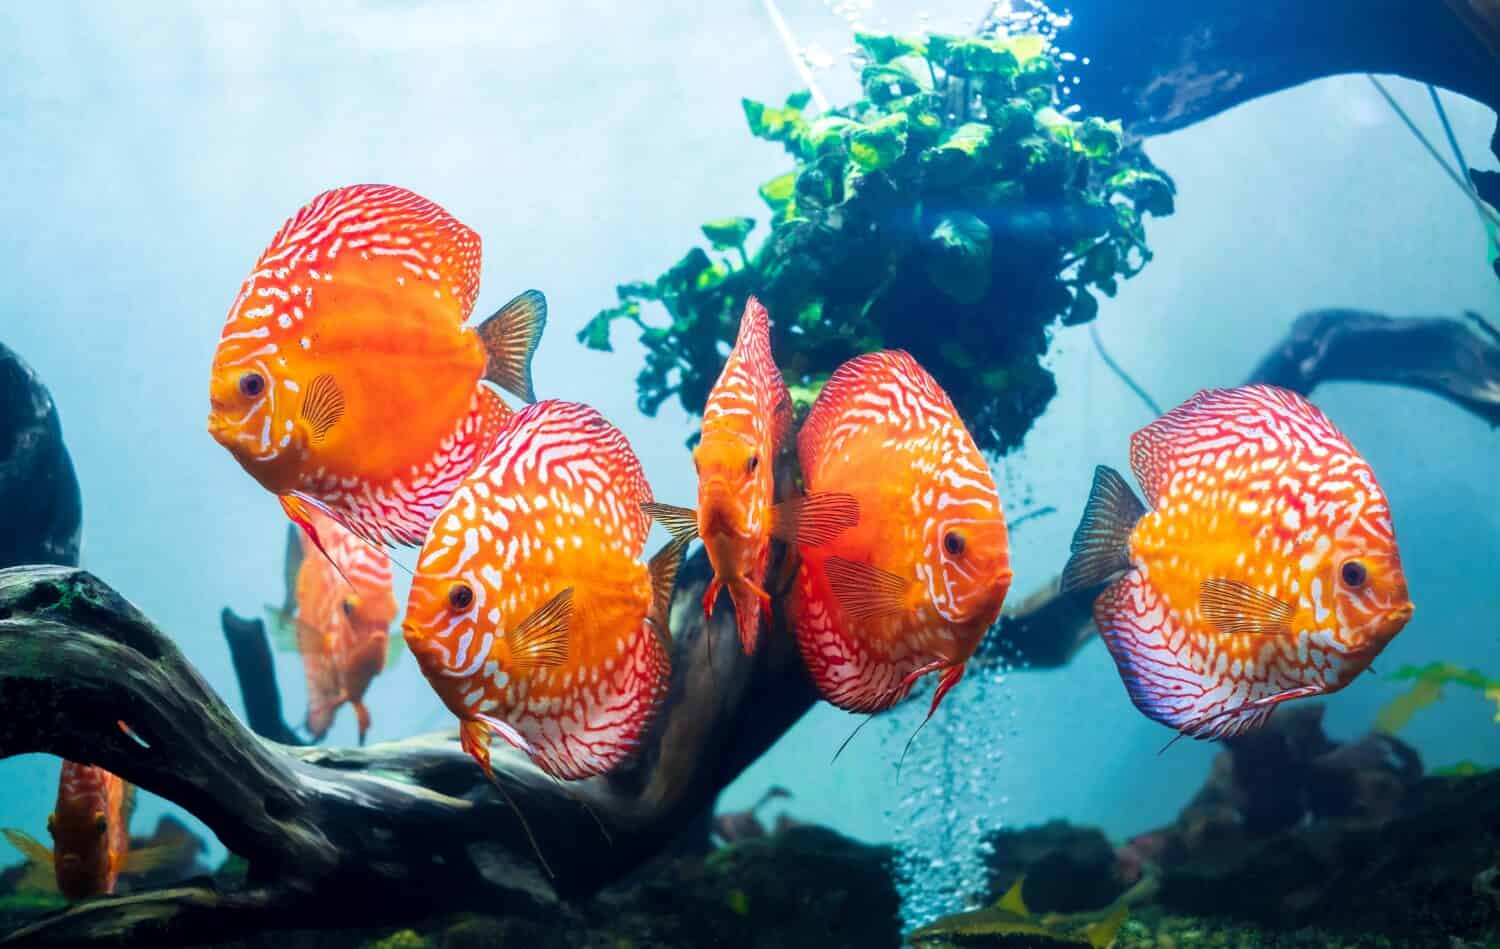 Un gruppo di discus colorati (pesce pompadour) nuota nella vasca dei pesci.  Symphysodon aequifasciatus è un ciclide americano originario del Rio delle Amazzoni, in Sud America, popolare come pesce d'acquario d'acqua dolce.